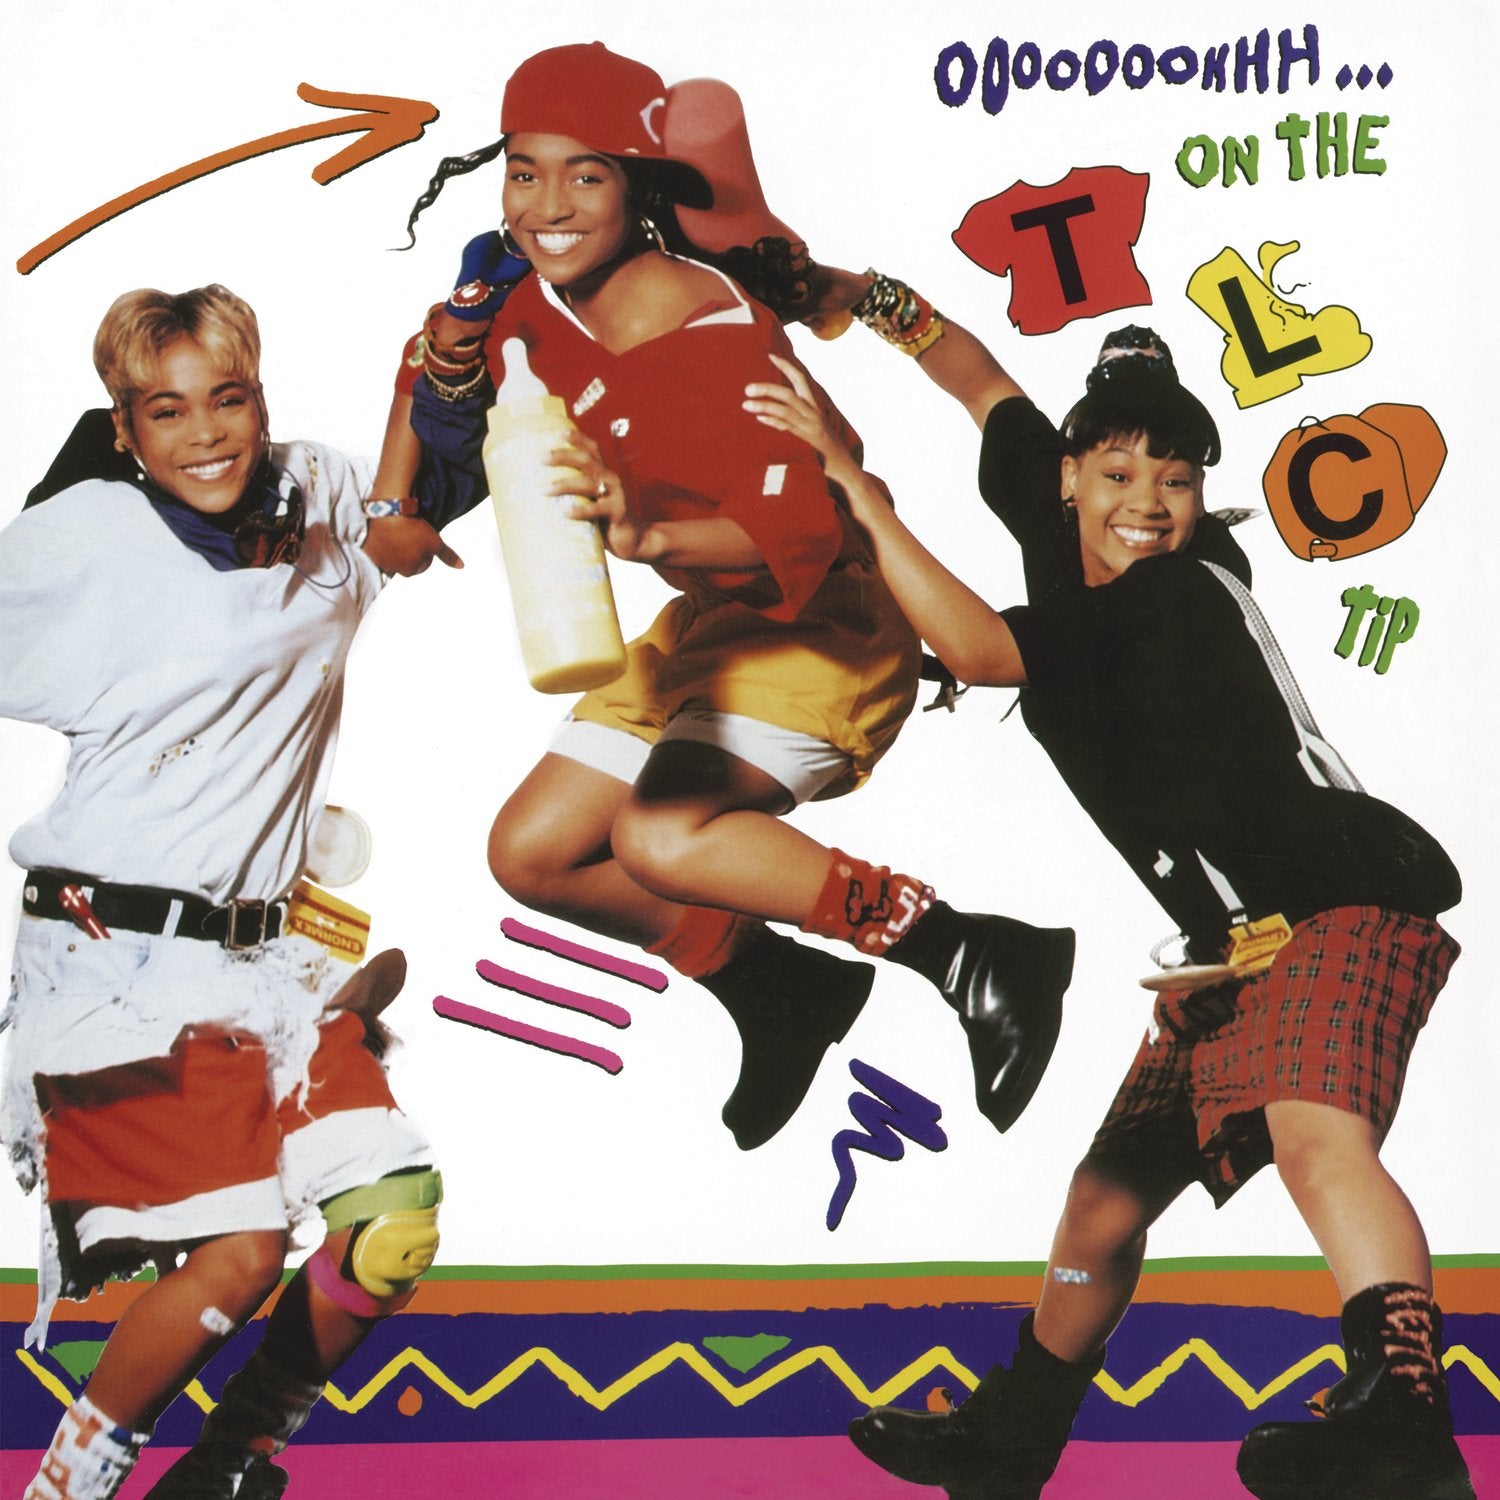 TLC - OOOOOOOHHH...ON THE TLC TIP Vinyl LP